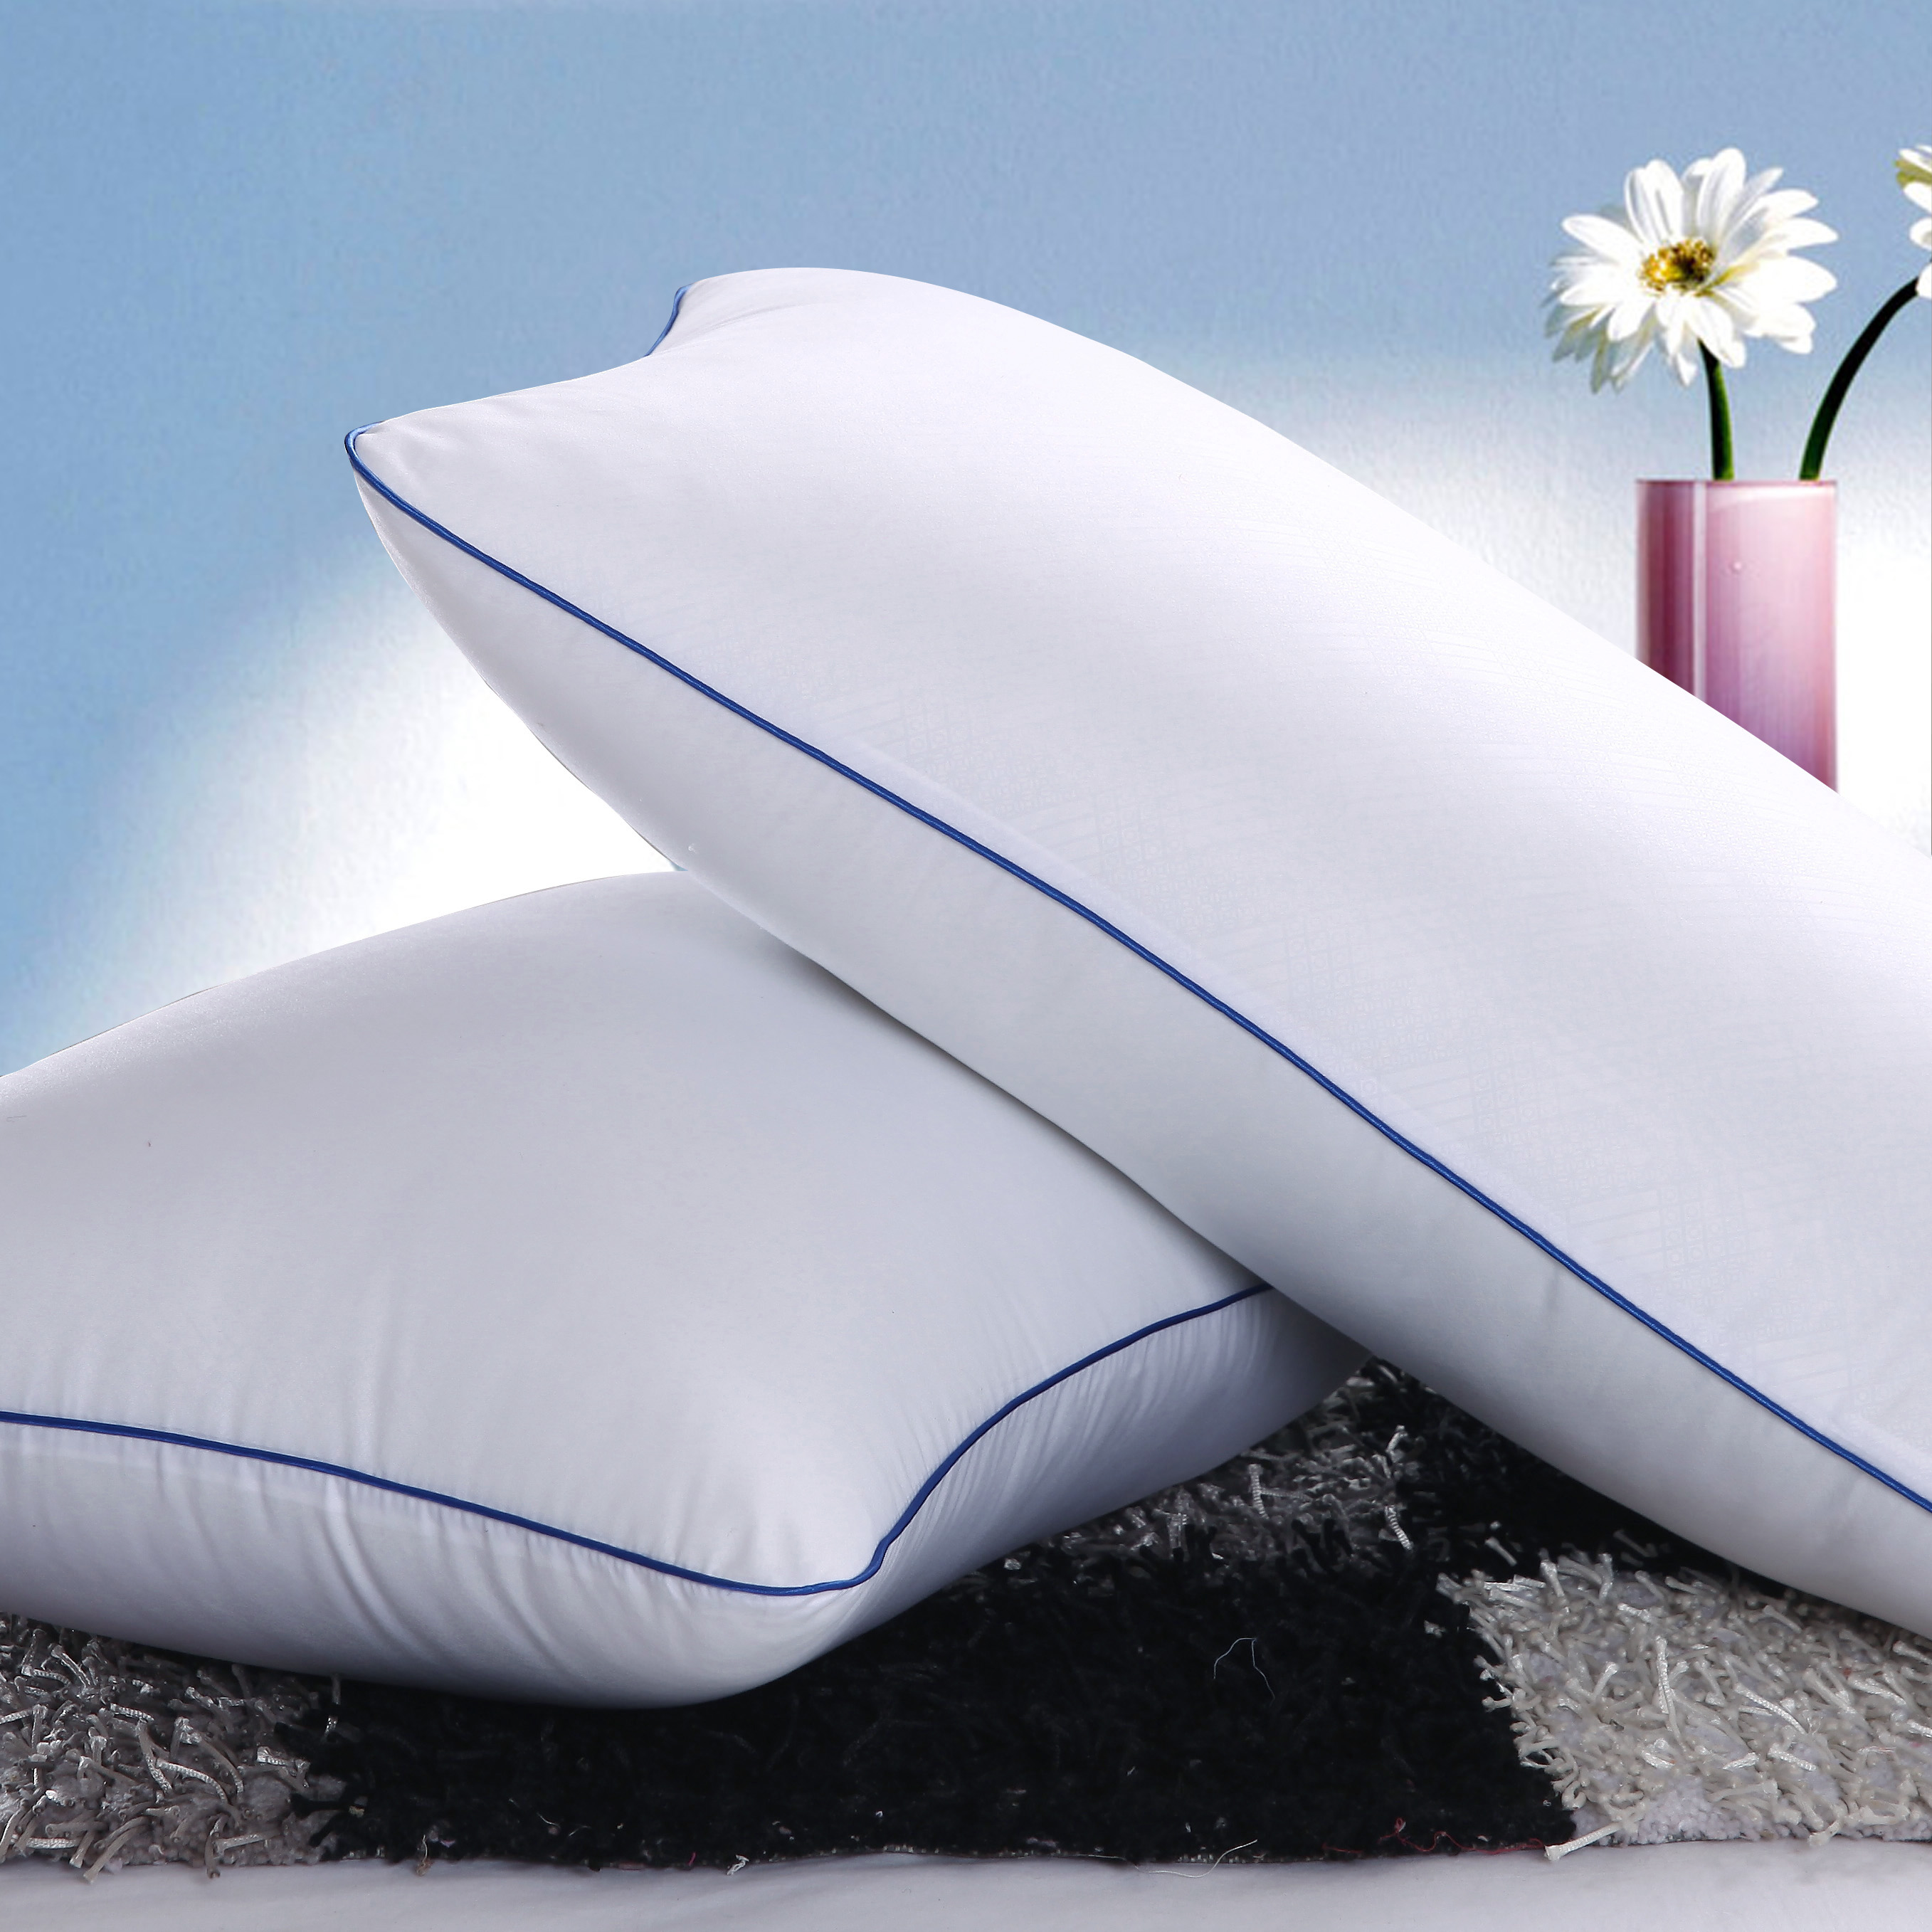 枕头颈椎保健枕 舒适枕 单人枕芯枕头芯 护颈枕 清仓特价折扣优惠信息